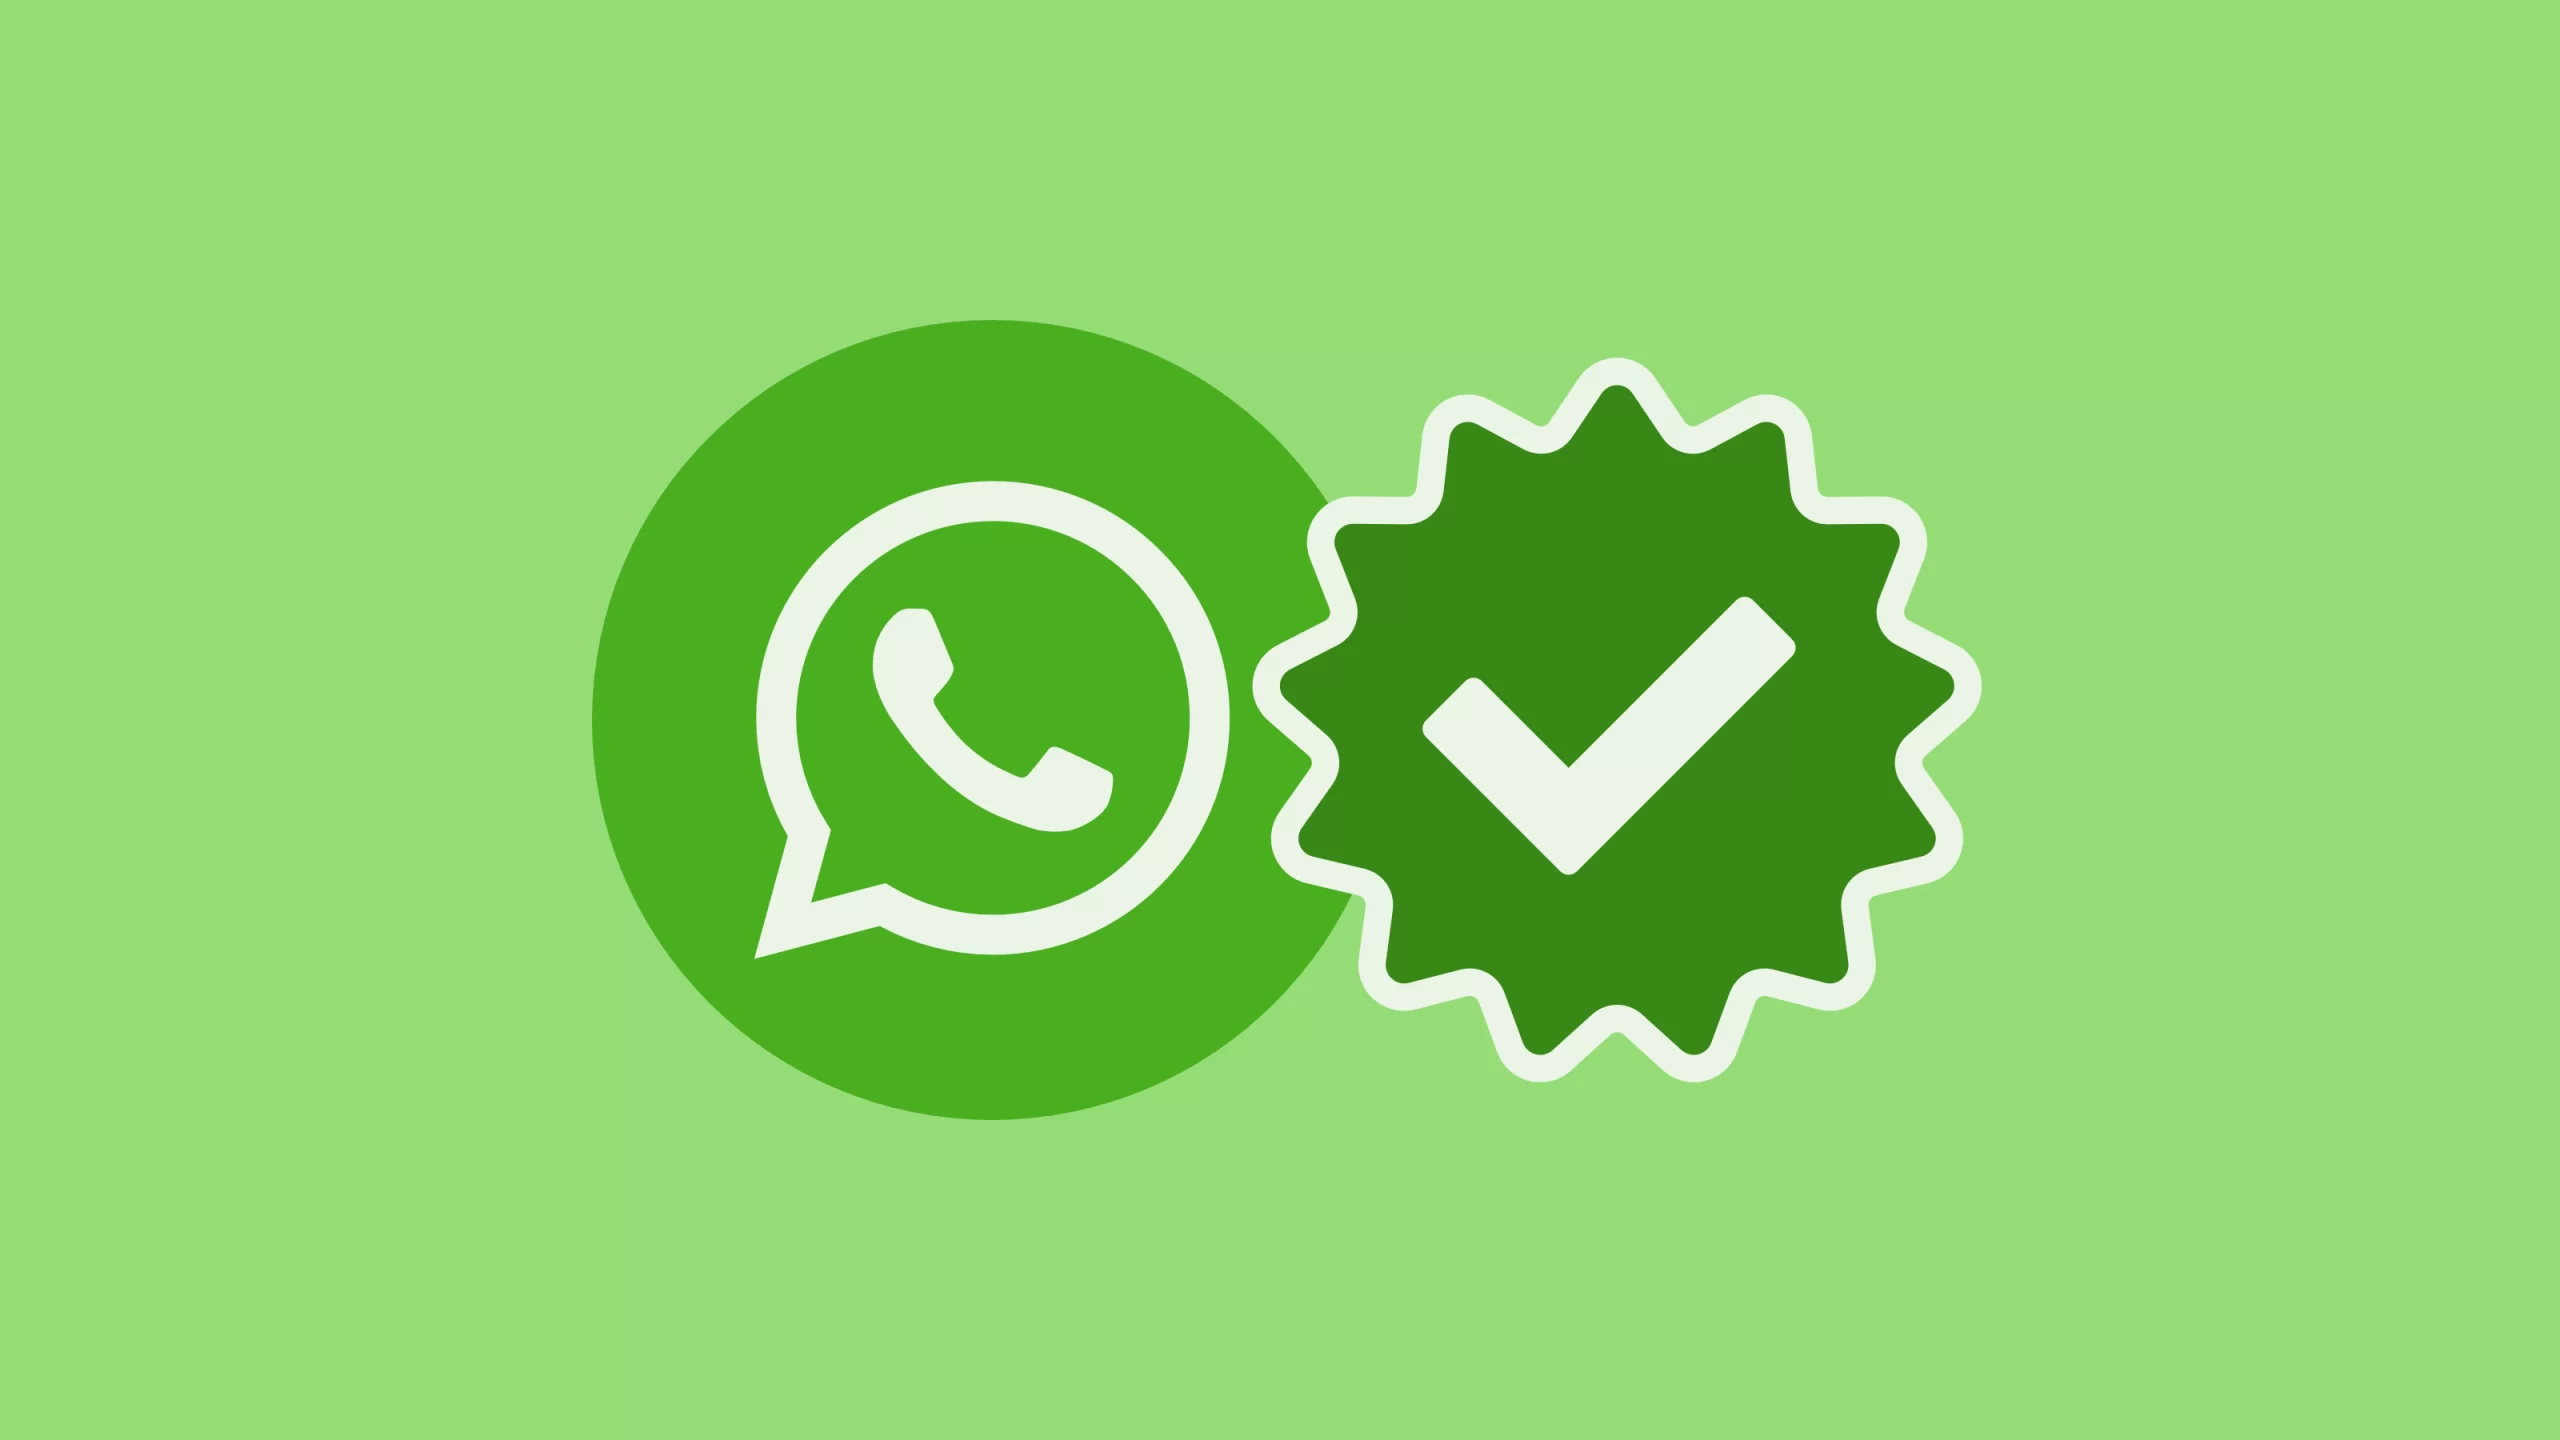 Como funcionam as contas com selo de verificado no WhatsApp?